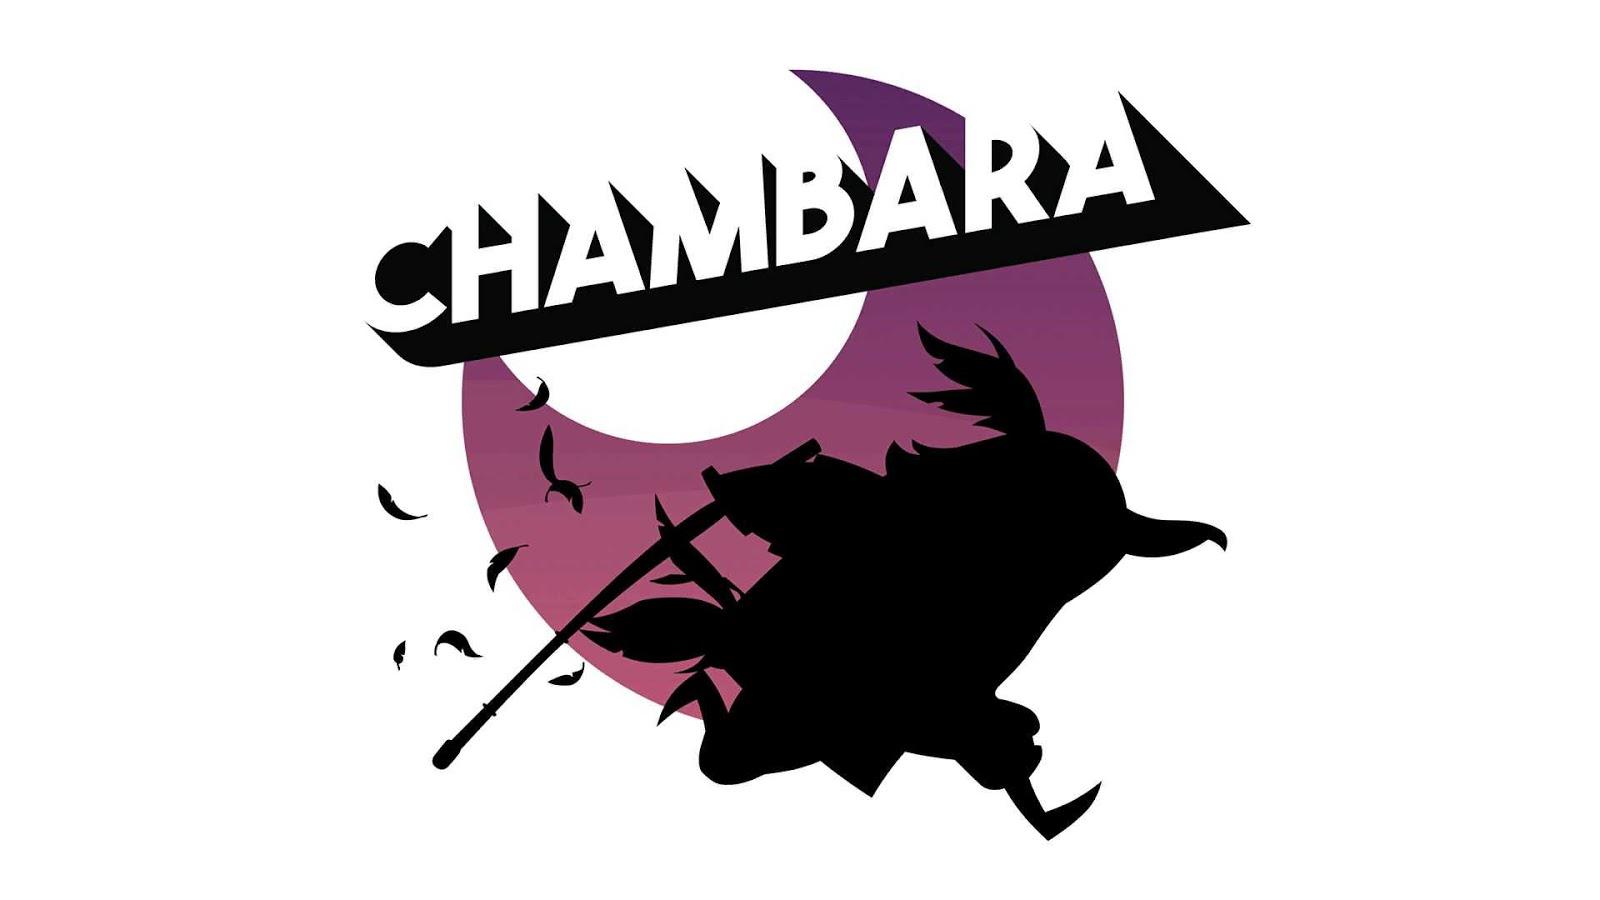 chambara